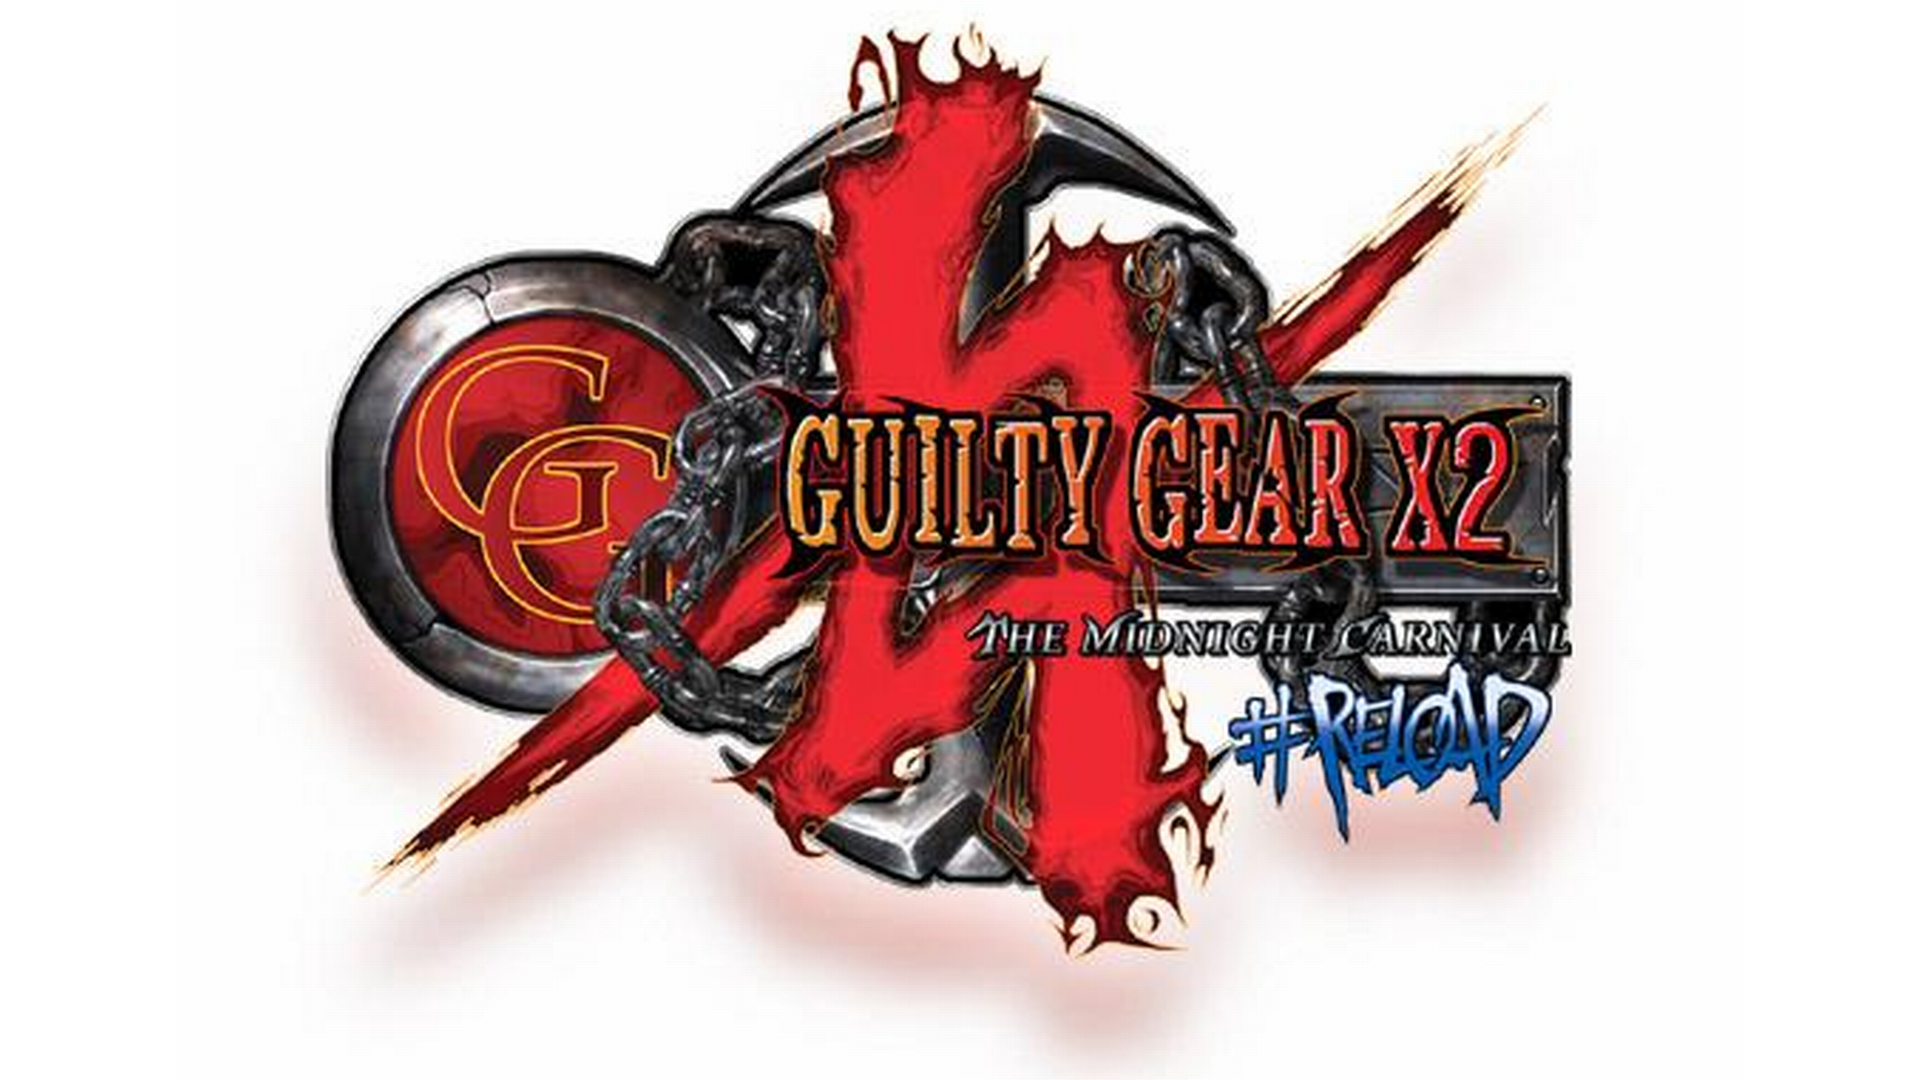 Guilty Gear X2 #Reload #19